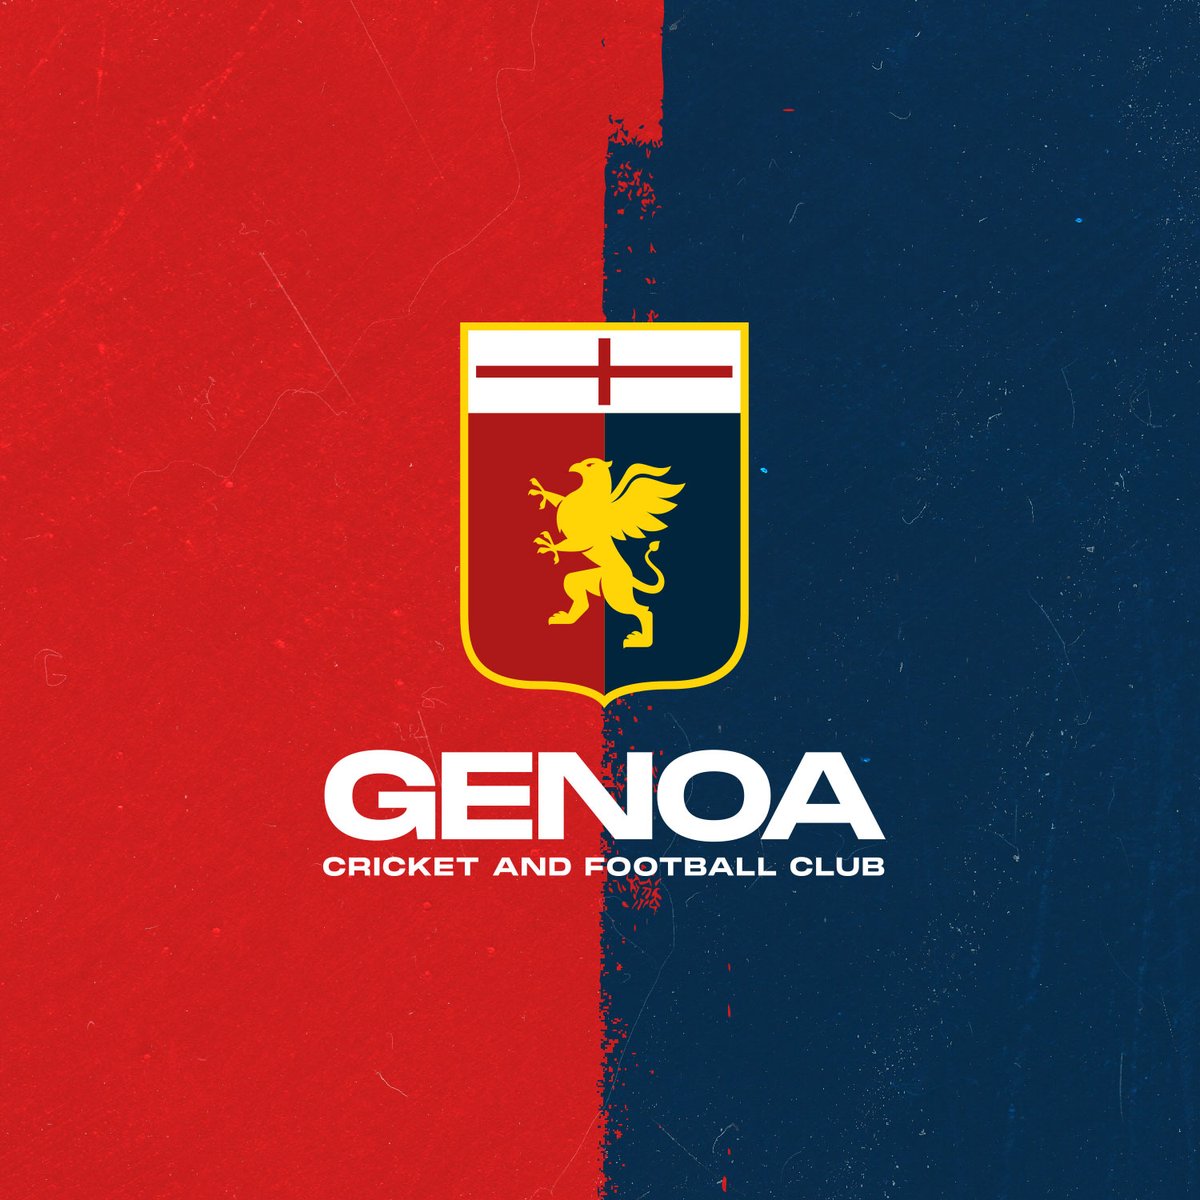 📝 Il Genoa CFC rende noto che in data odierna la FIGC ha deliberato, in accoglimento dell’istanza trasmessa alla Federazione, di attribuire il titolo sportivo di Serie B Femminile della società ASD Cortefranca Calcio, alla società Genoa Cricket and Football Club.